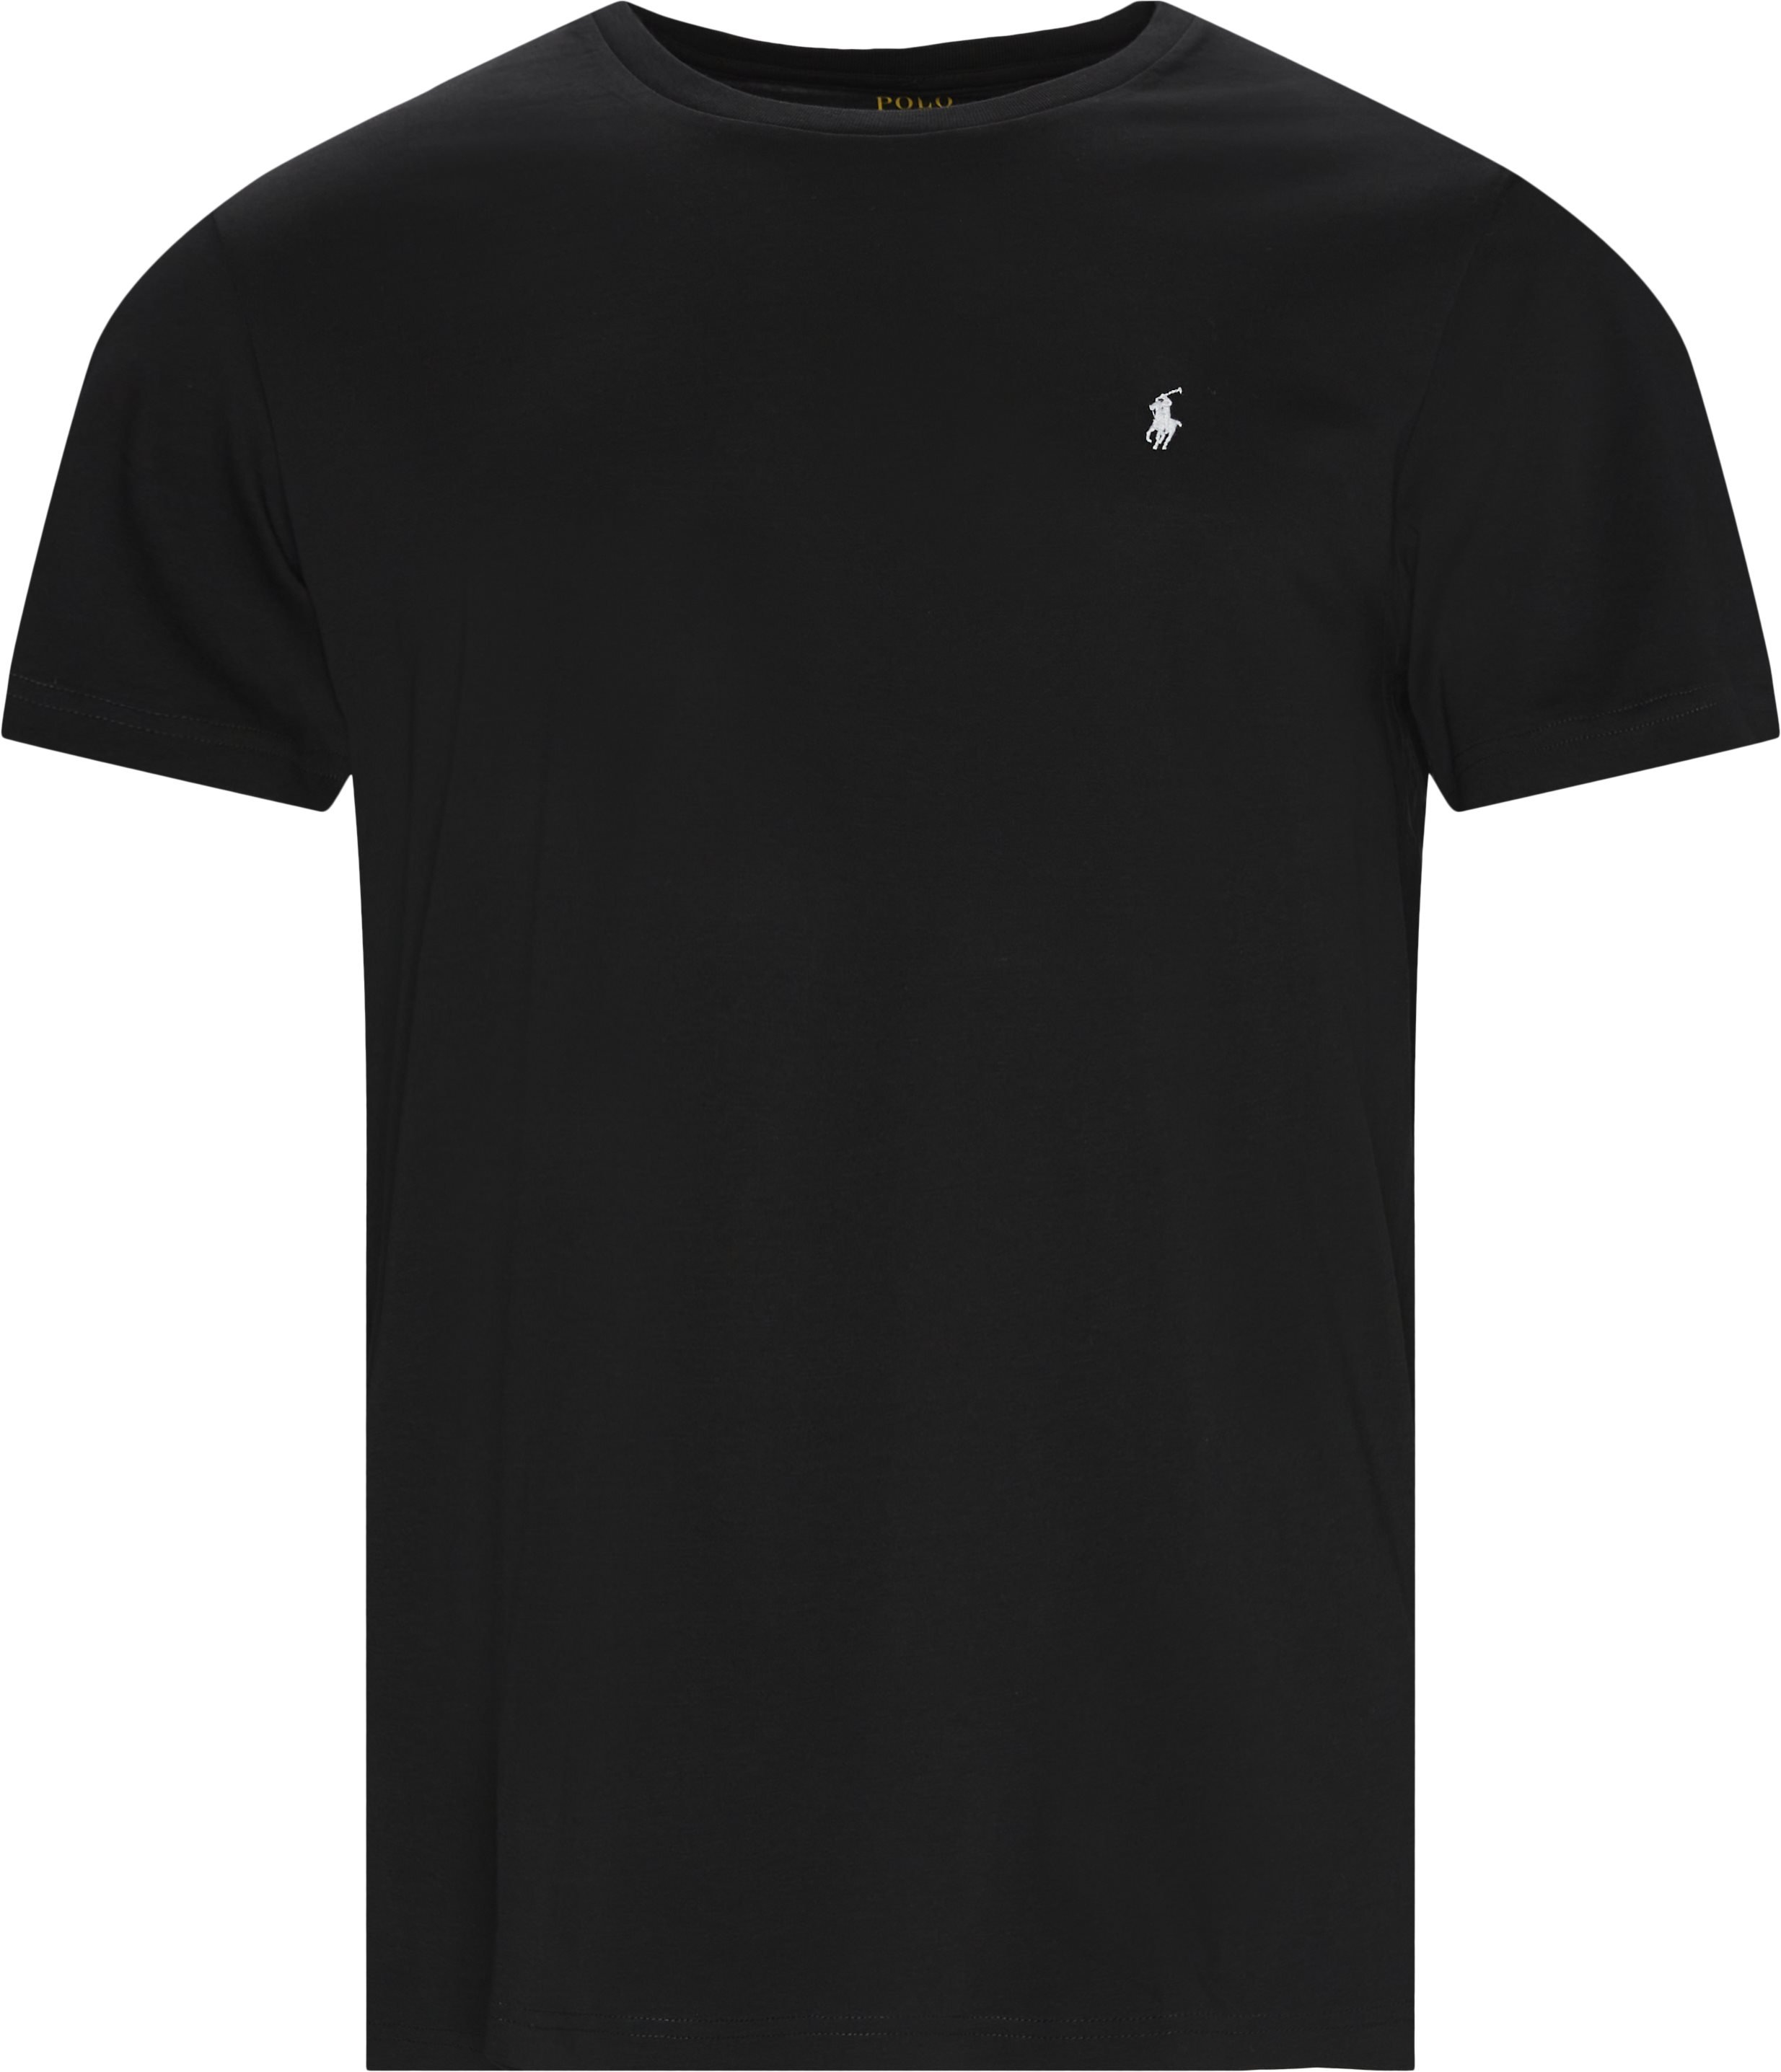 Polo Ralph Lauren T-shirts 714844756 Sort